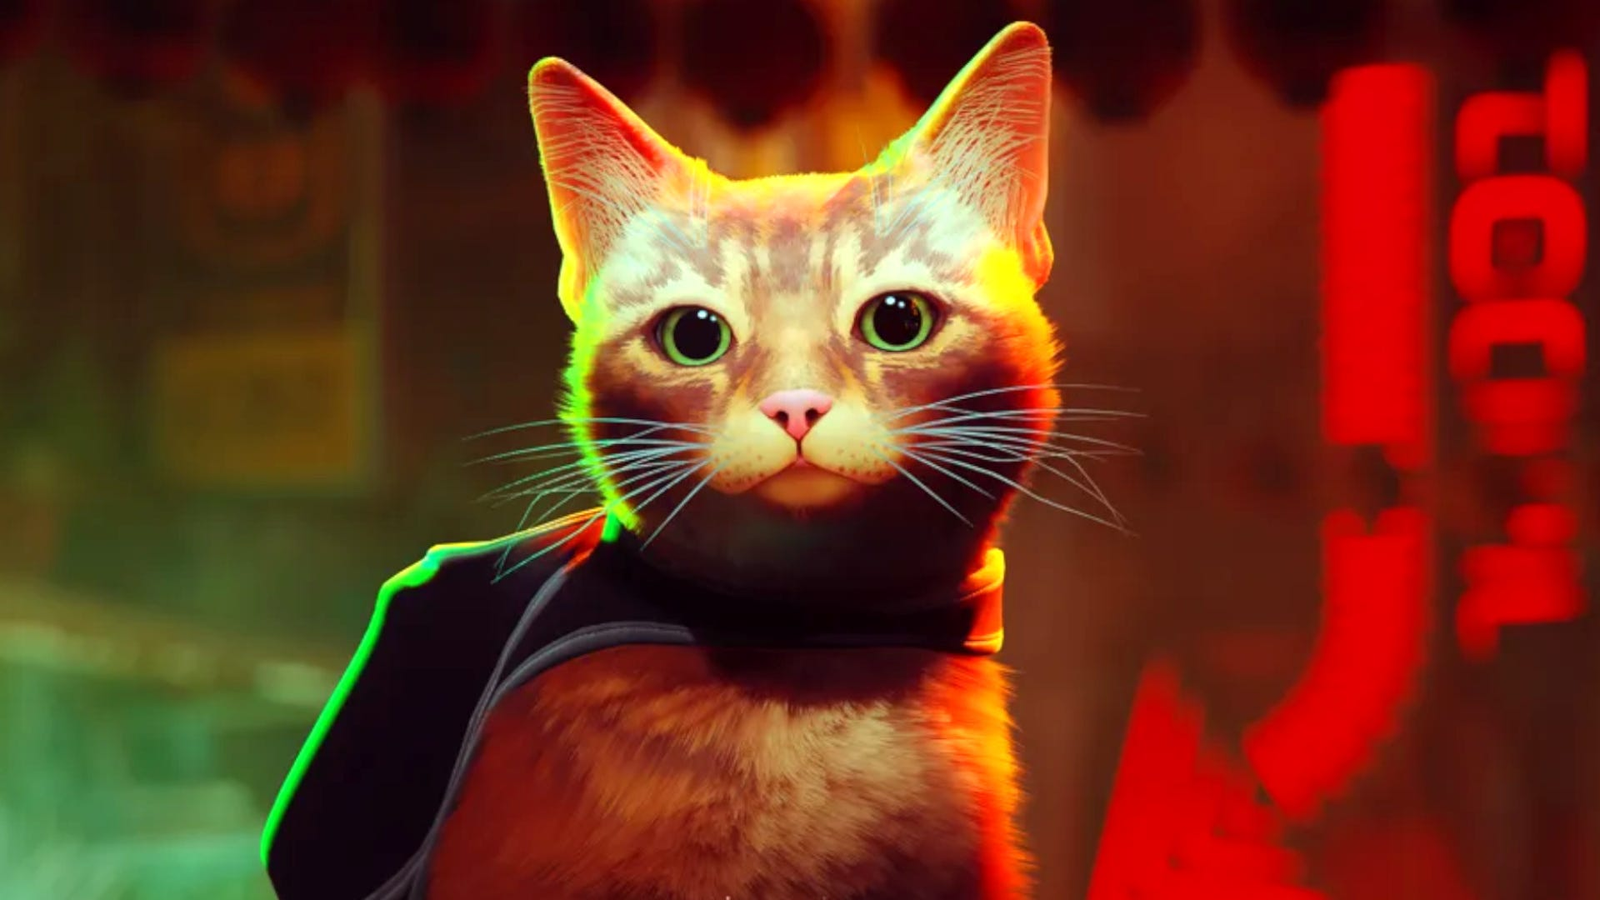 Stray: Jogo do gato terá animação pelo estúdio de Nimona